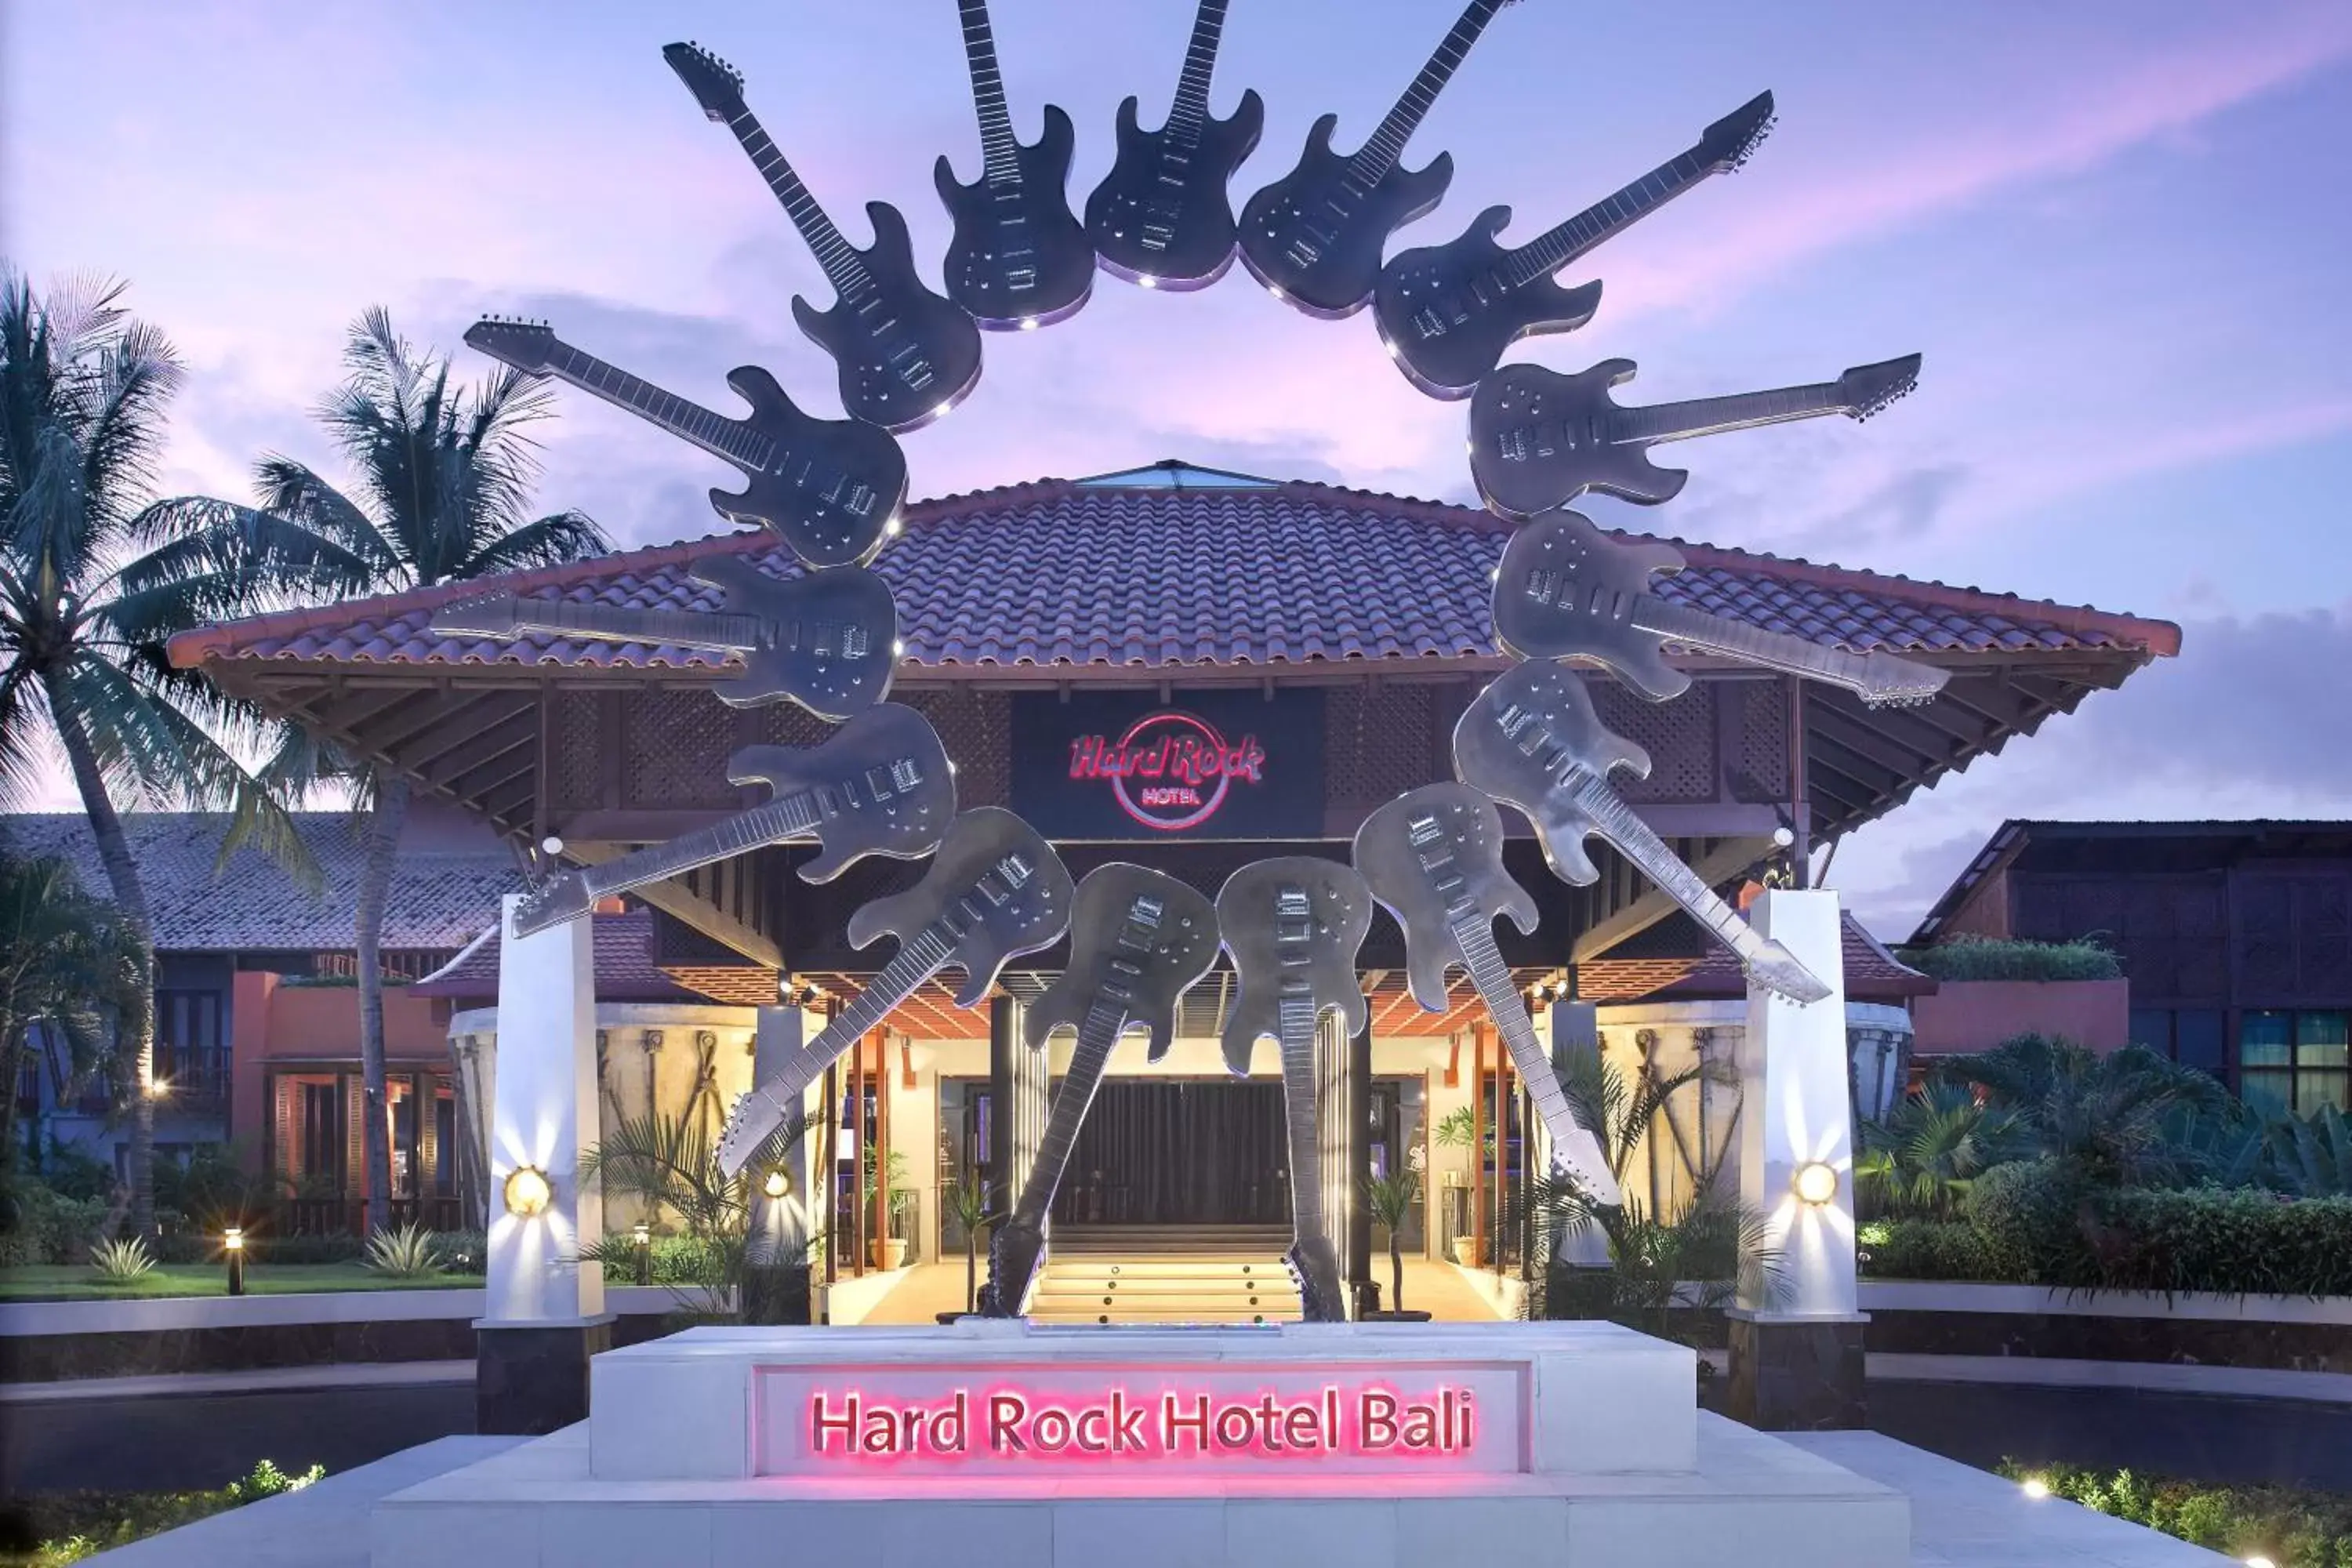 Nearby landmark in Hard Rock Hotel Bali